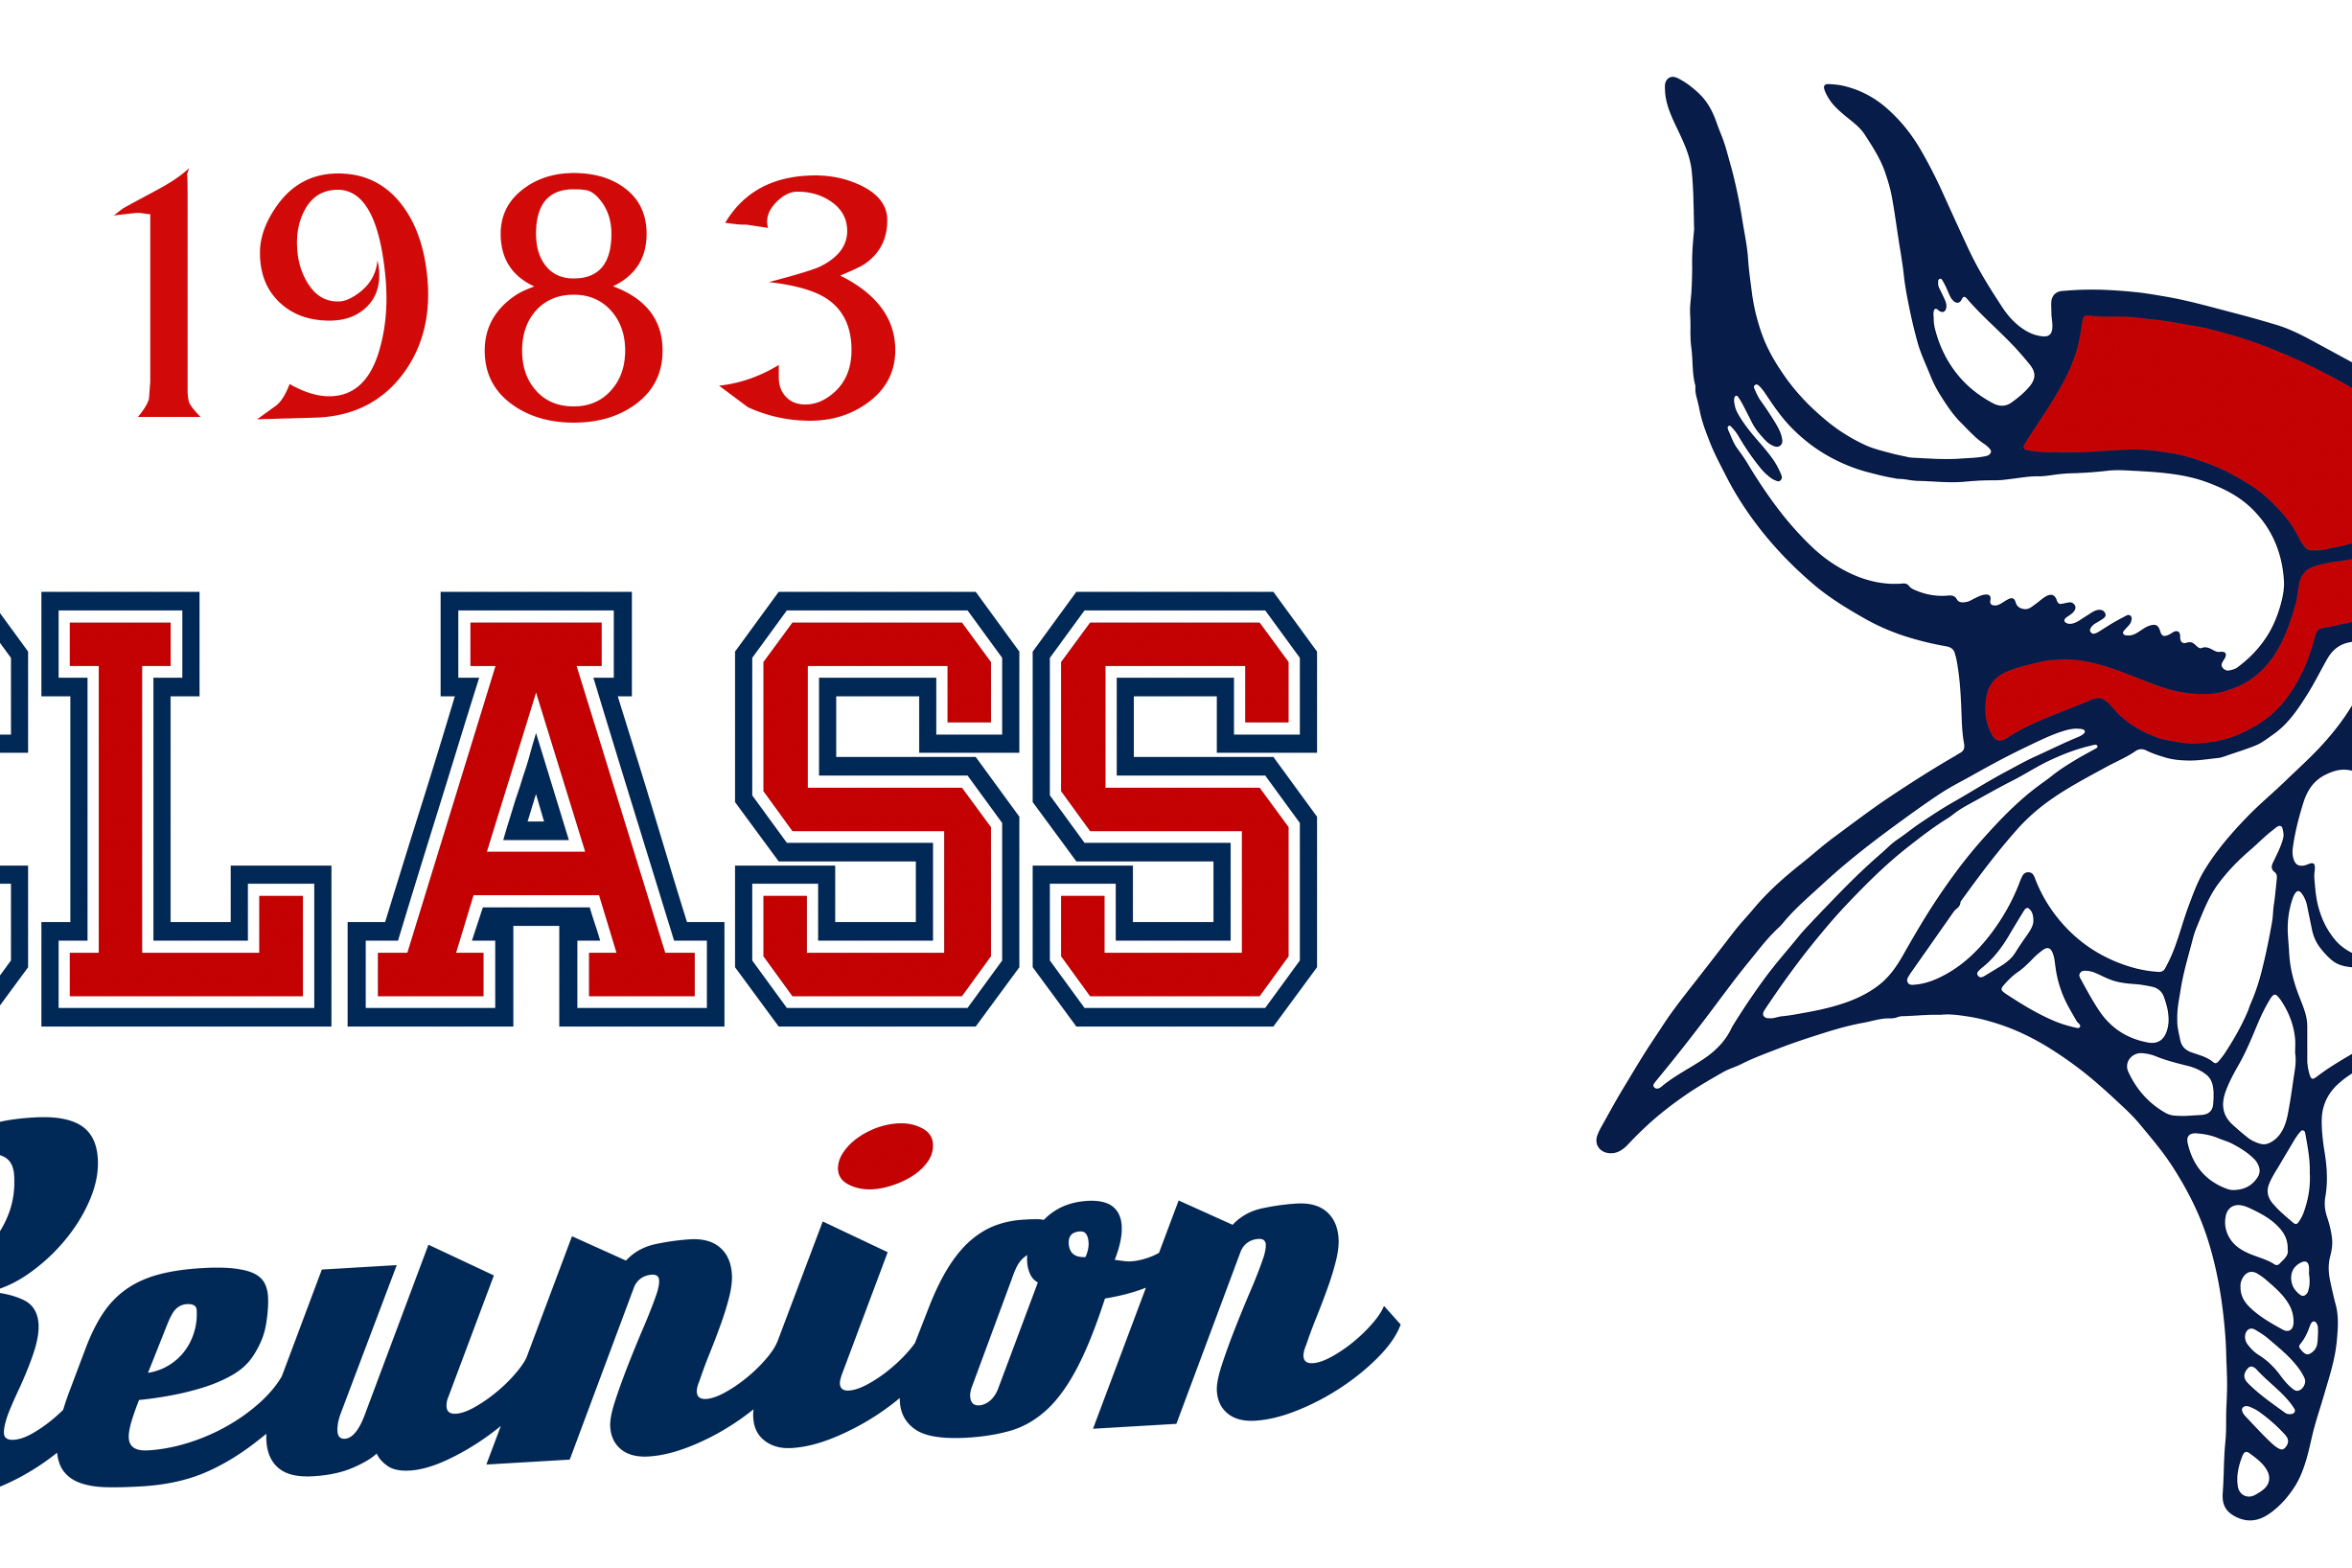 FWBHS logo. FWBHS Class of 1983 Reunion